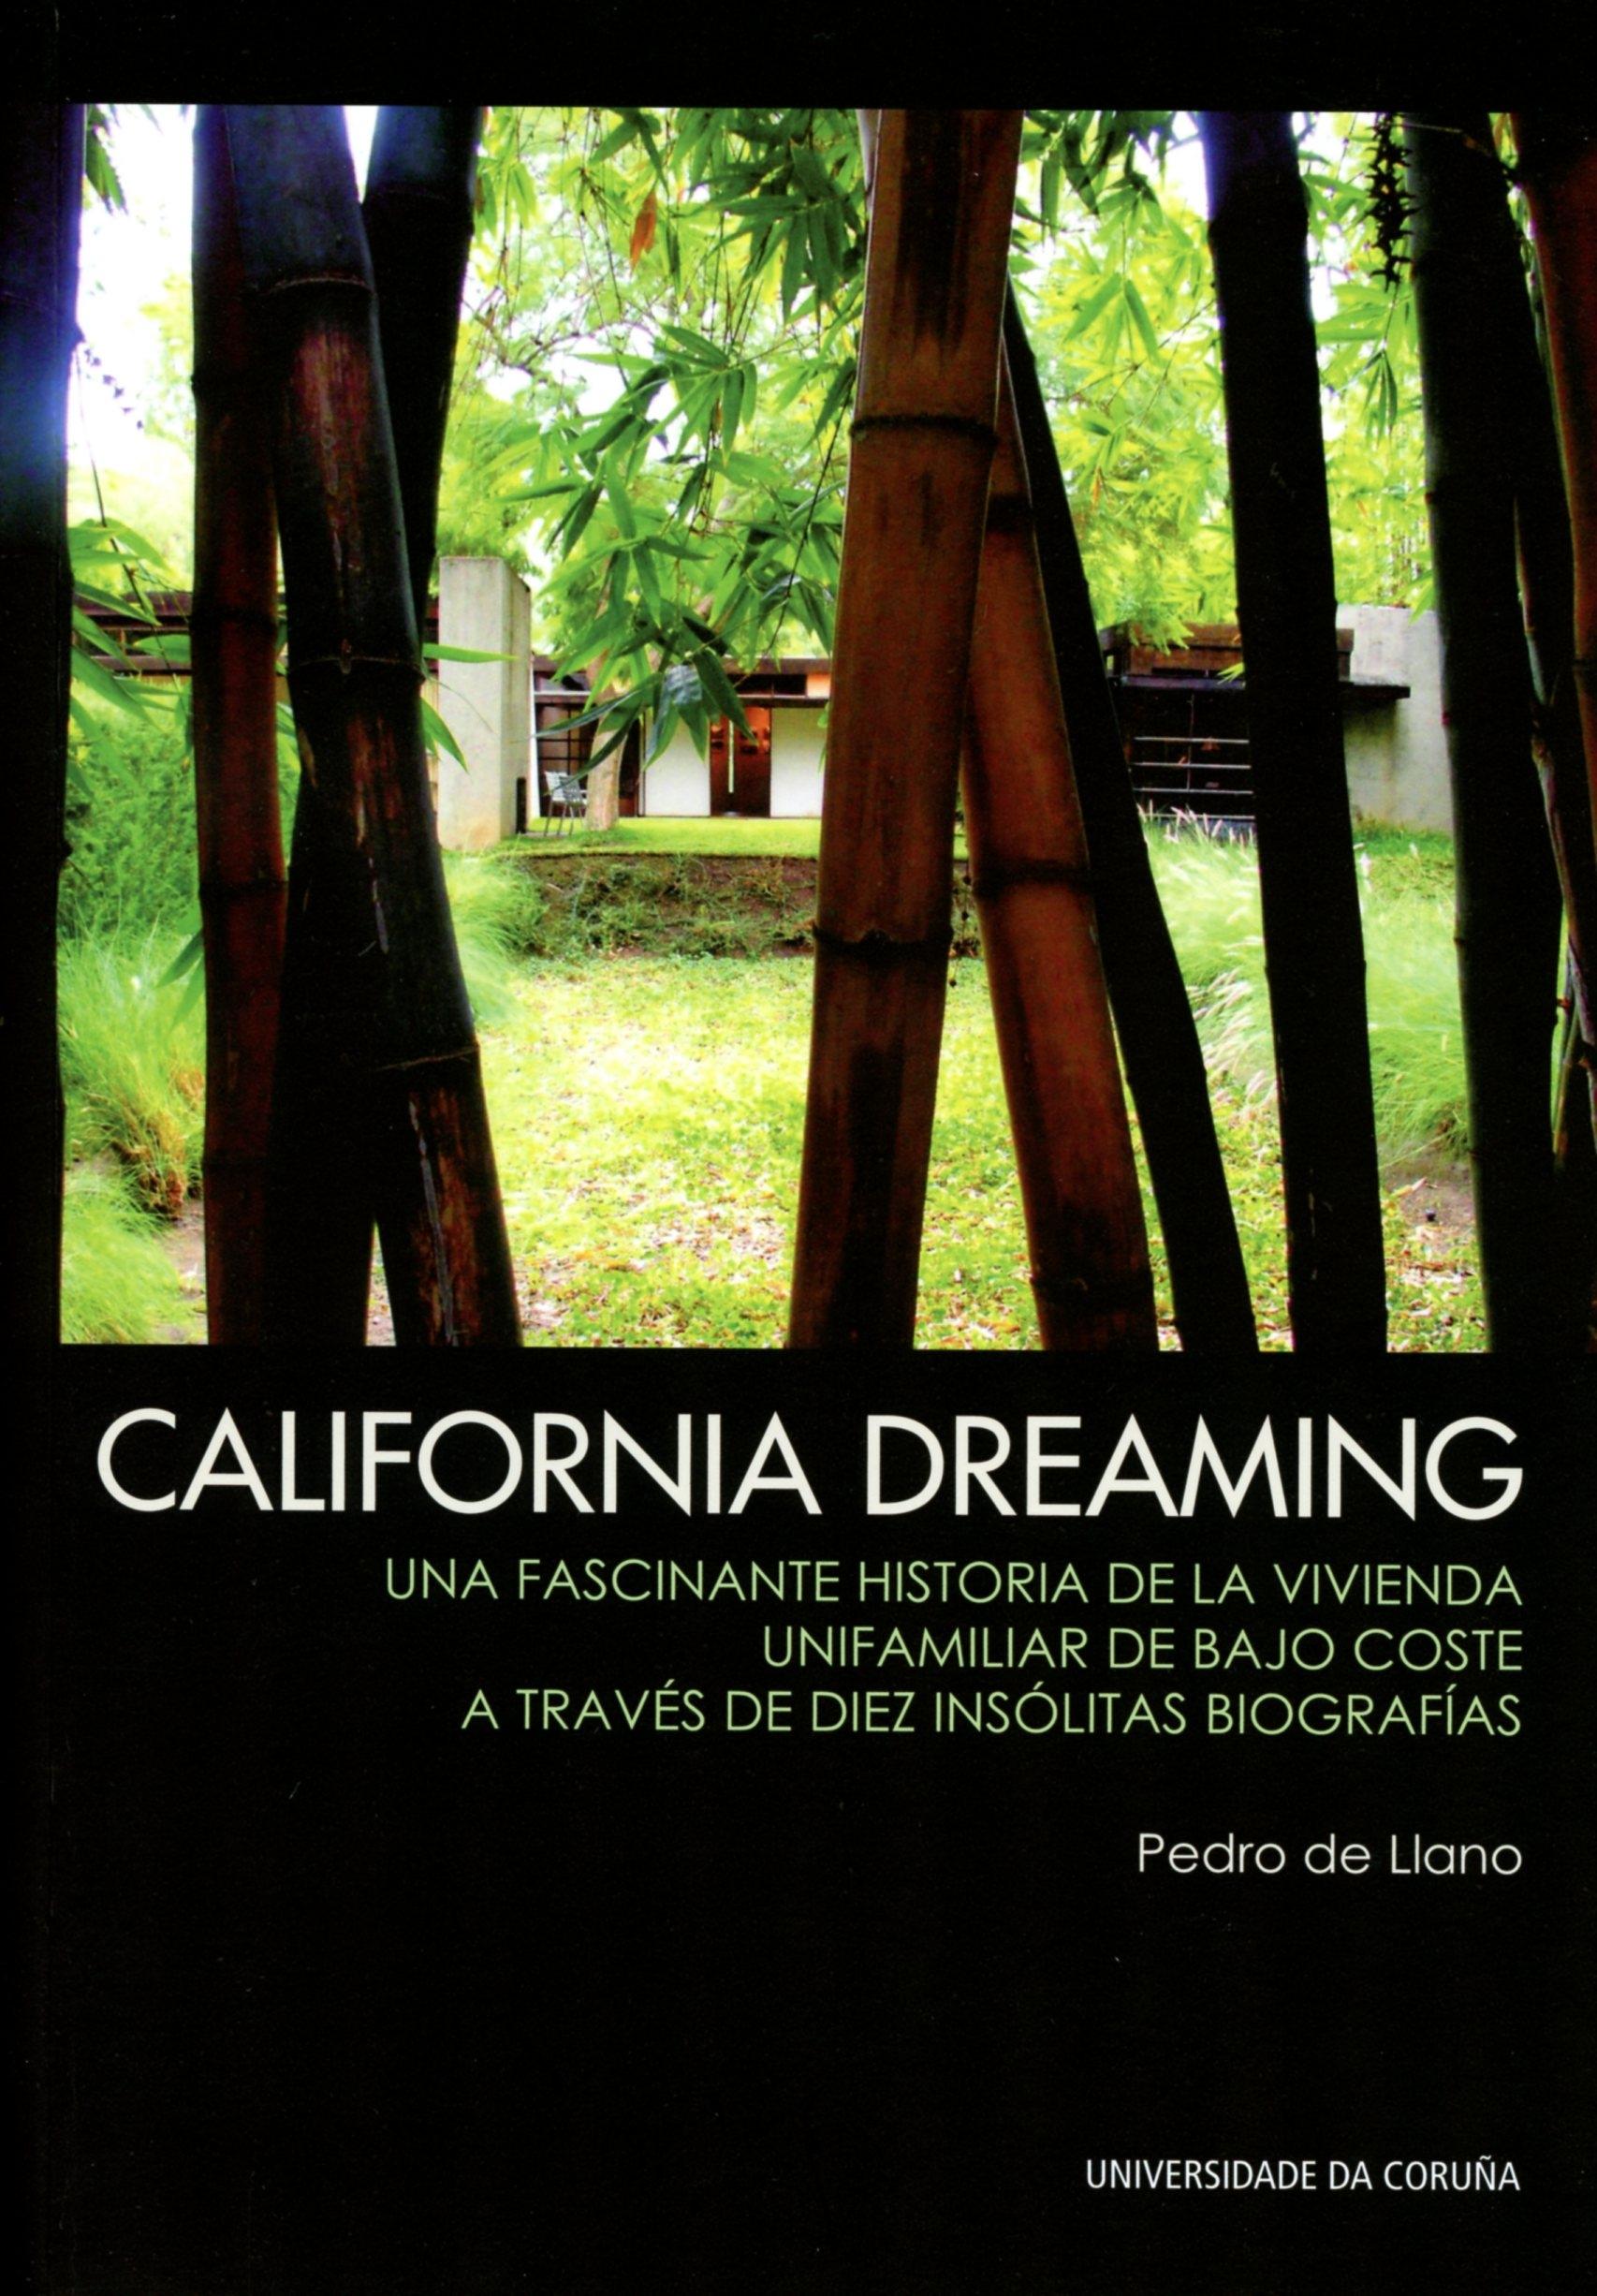 CALIFORNIA DREAMING. UNA FASCINANTE HISTORIA DE LA VIVIENDA UNIFAMILIAR DE BAJO COSTE "A TRAVES DE DIEZ INSOLITAS BIOGRAFIAS"